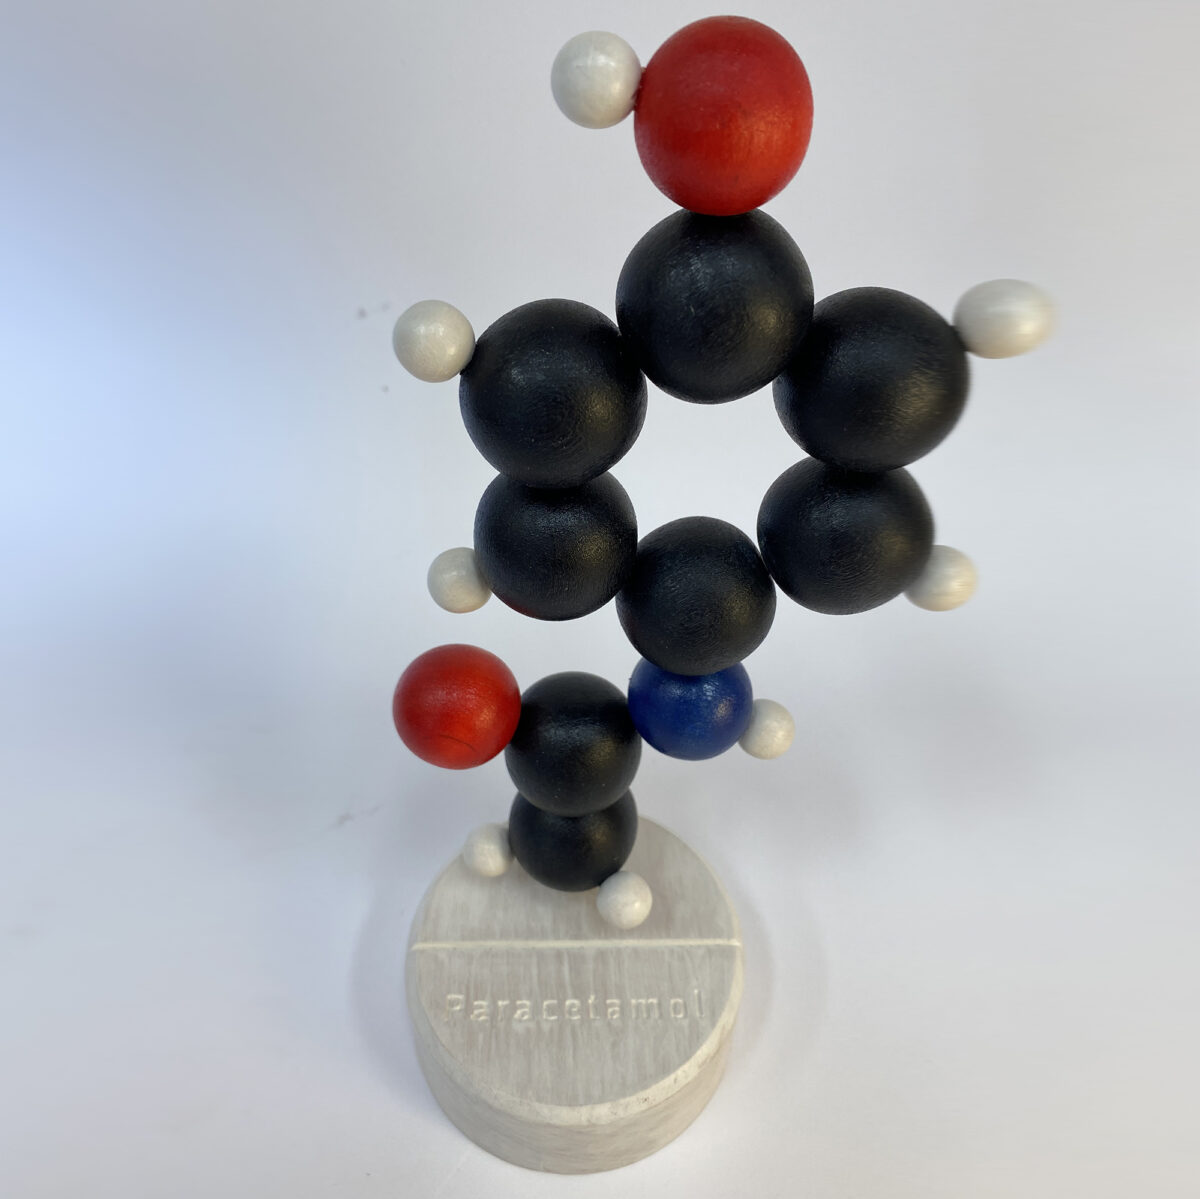 Paracetamol molecule model